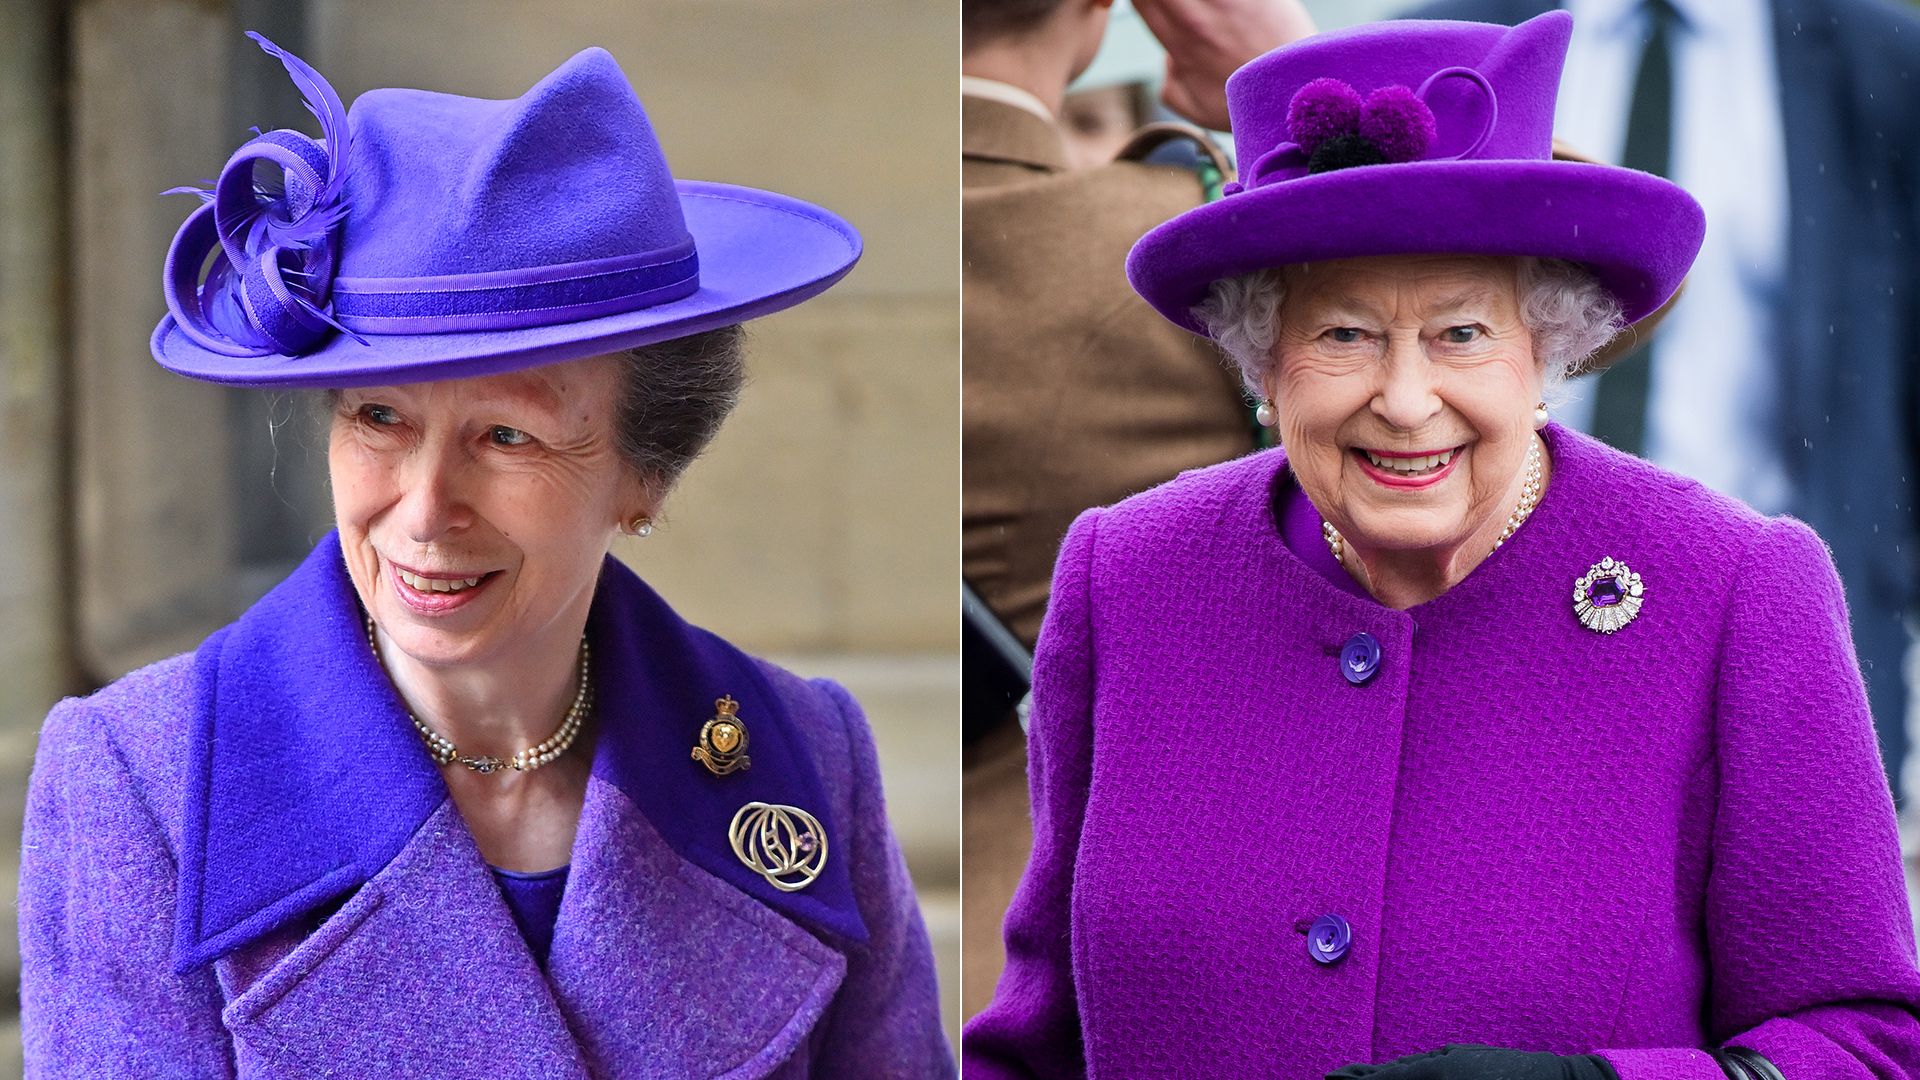 Princess Anne wearing a purple suit beside Queen Elizabeth II also wearing a purple jacket